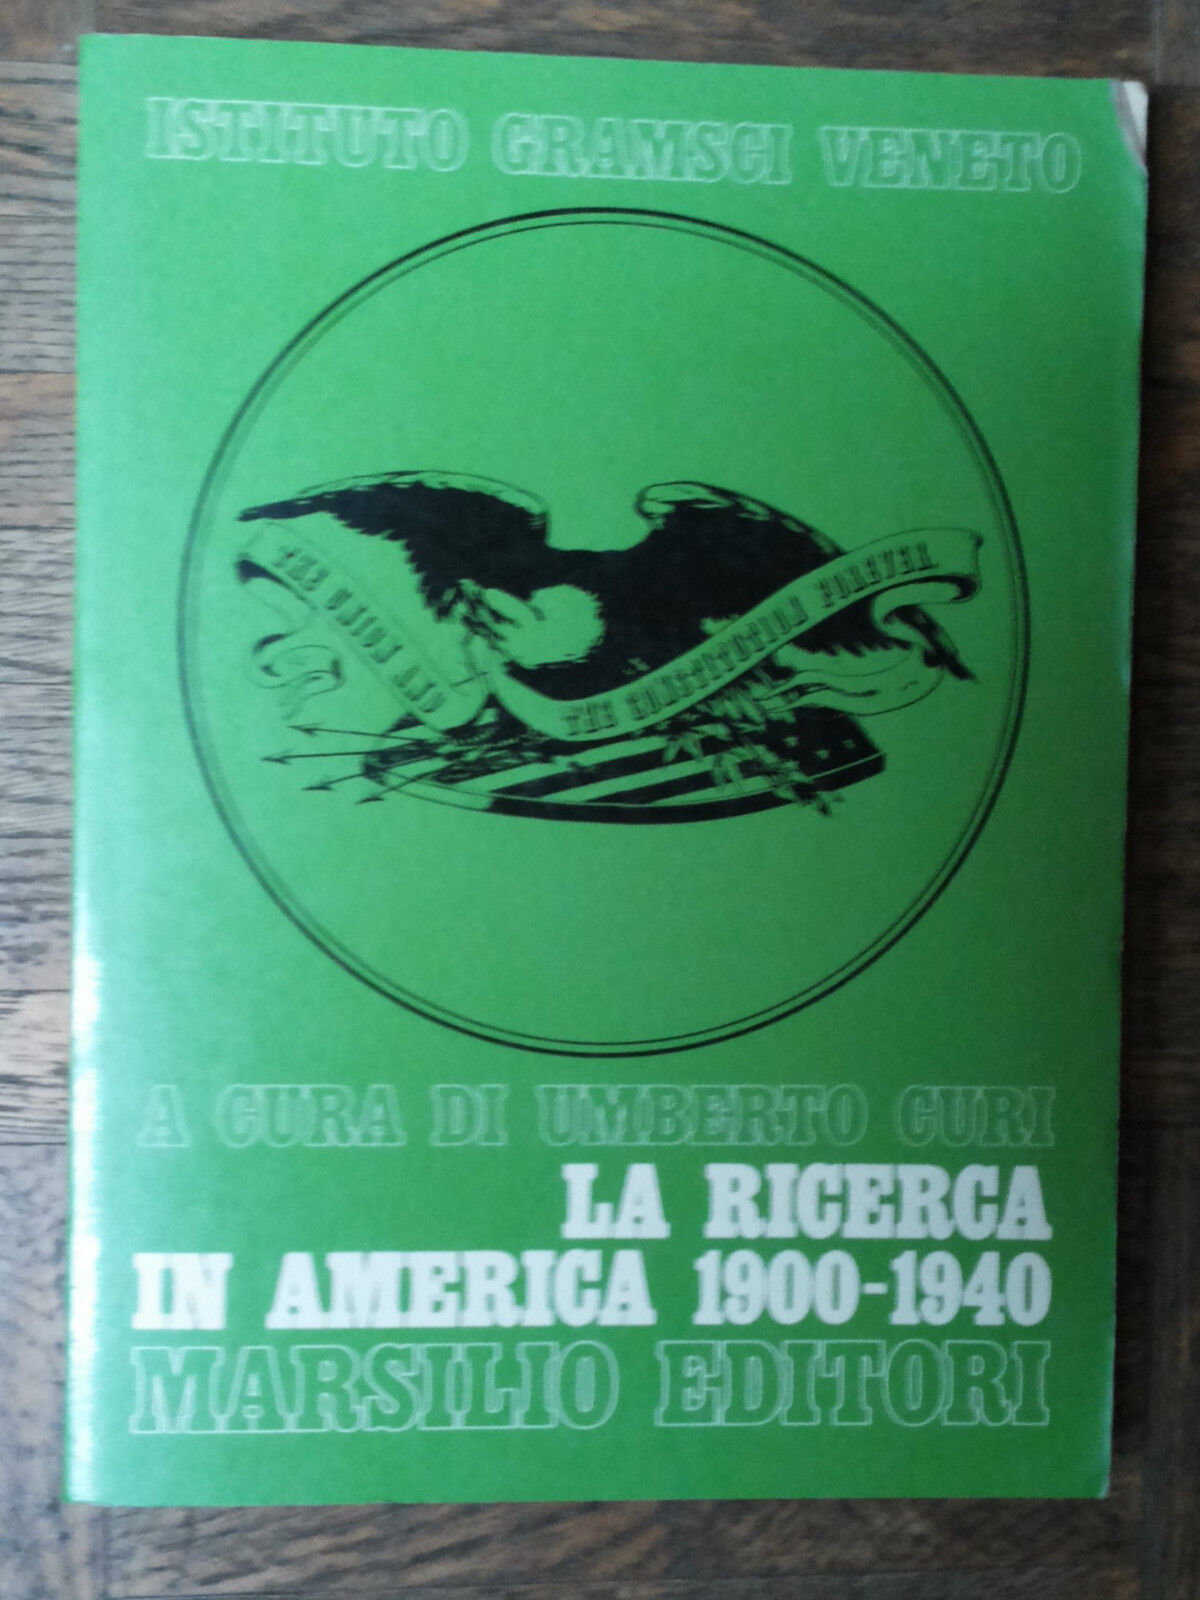 La ricerca in America 1900-1940-Istituto Gramsci Veneto-Marsilio Editori,1978-R